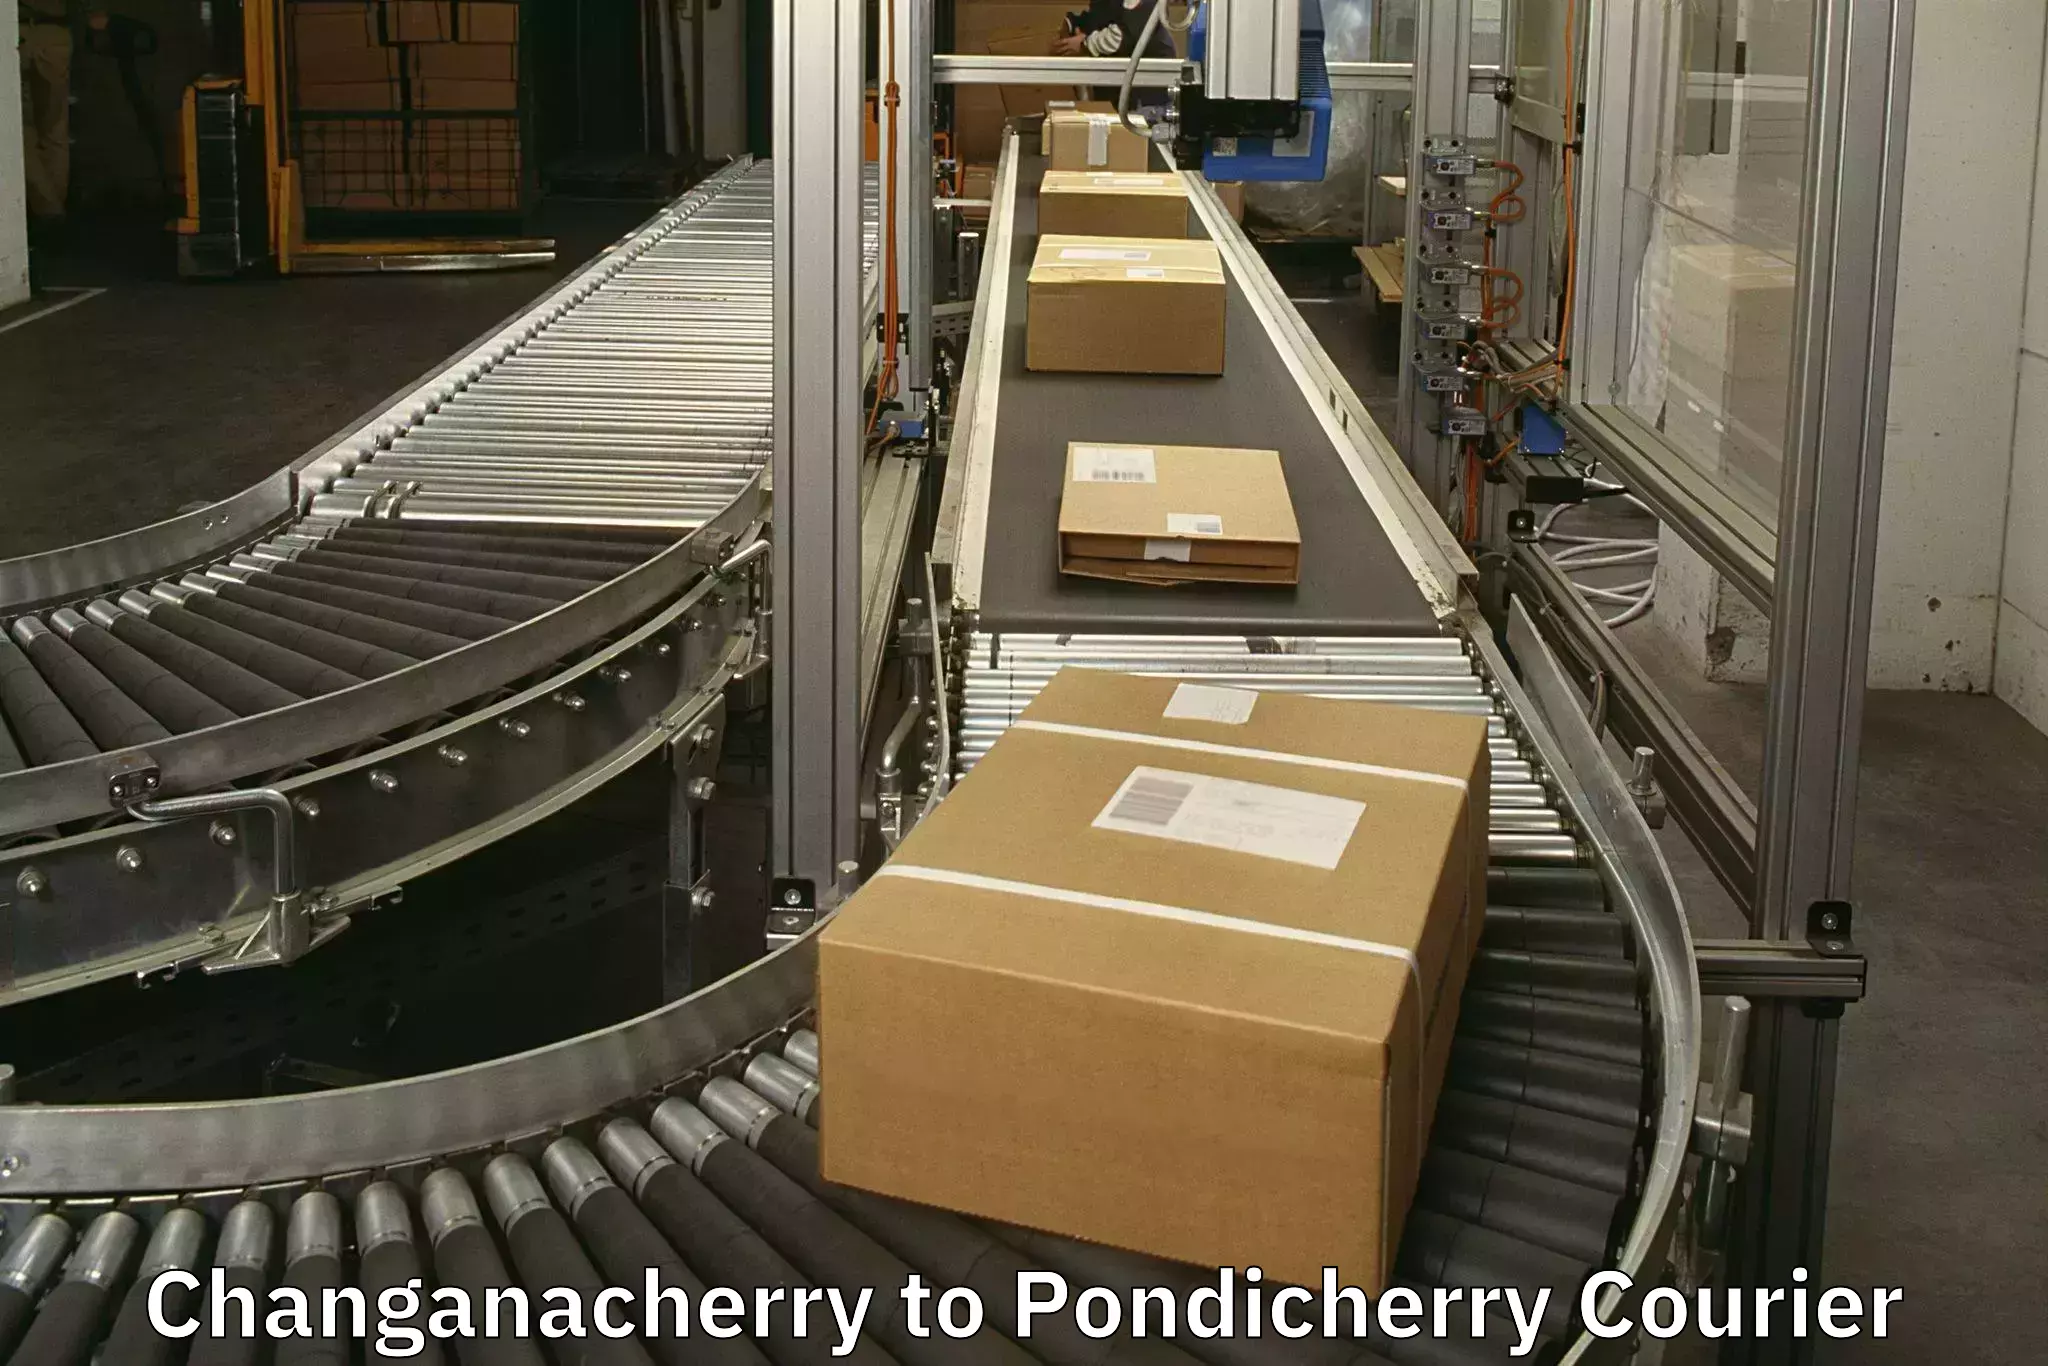 Baggage shipping experts Changanacherry to Pondicherry